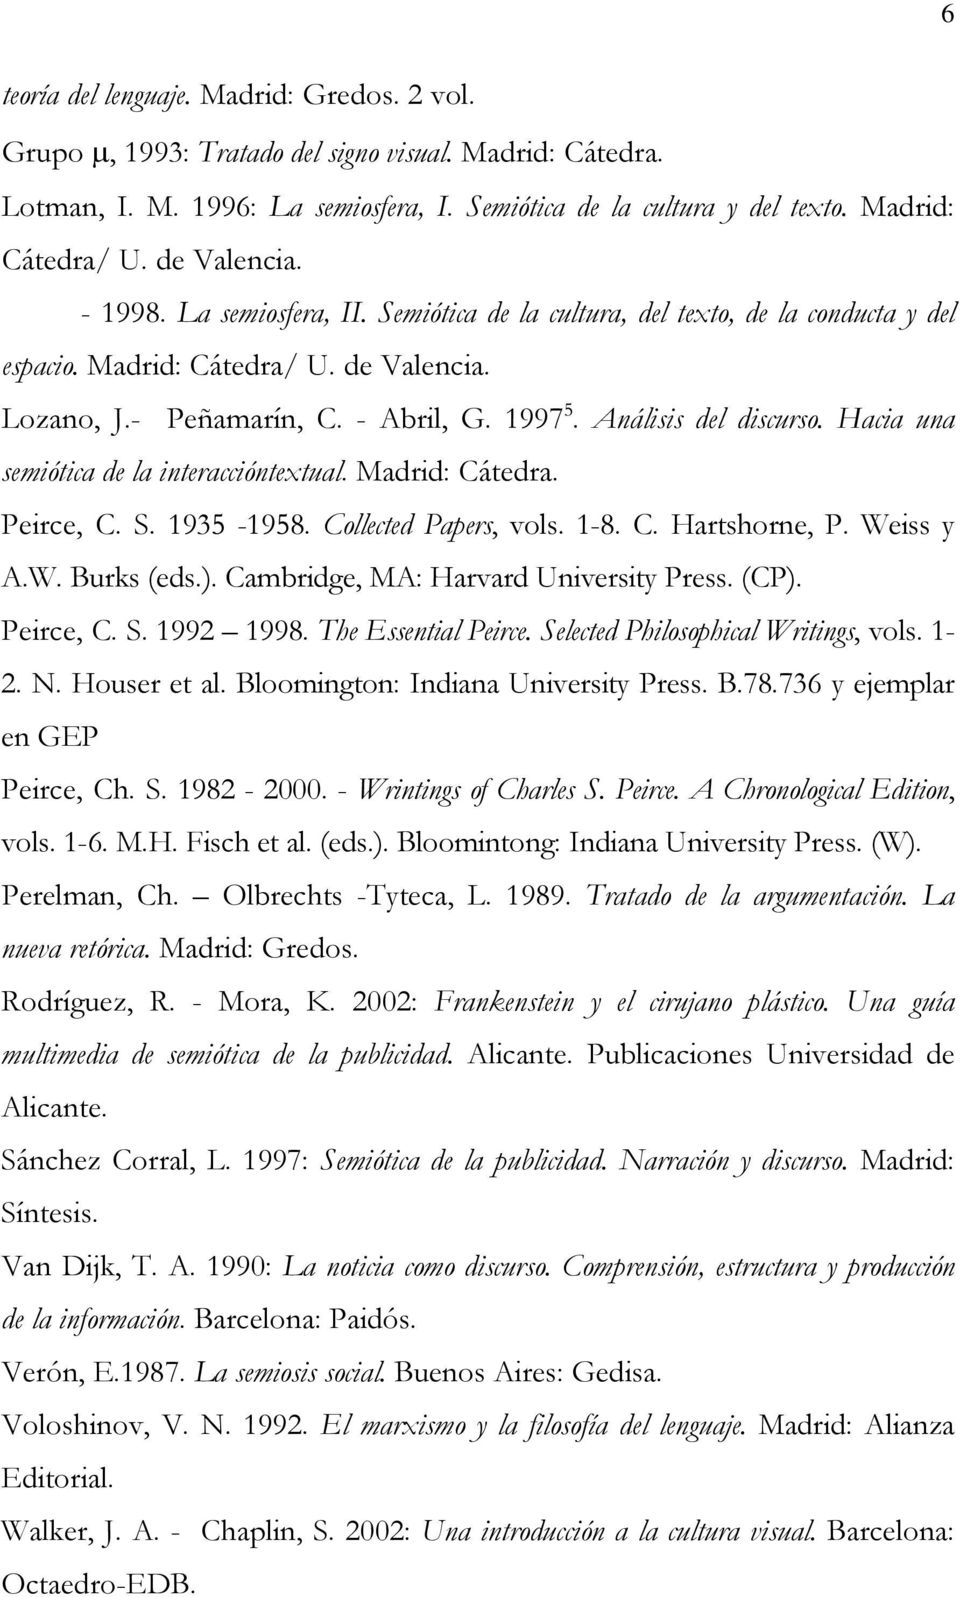 Análisis del discurso. Hacia una semiótica de la interaccióntextual. Madrid: Cátedra. Peirce, C. S. 1935-1958. Collected Papers, vols. 1-8. C. Hartshorne, P. Weiss y A.W. Burks (eds.).